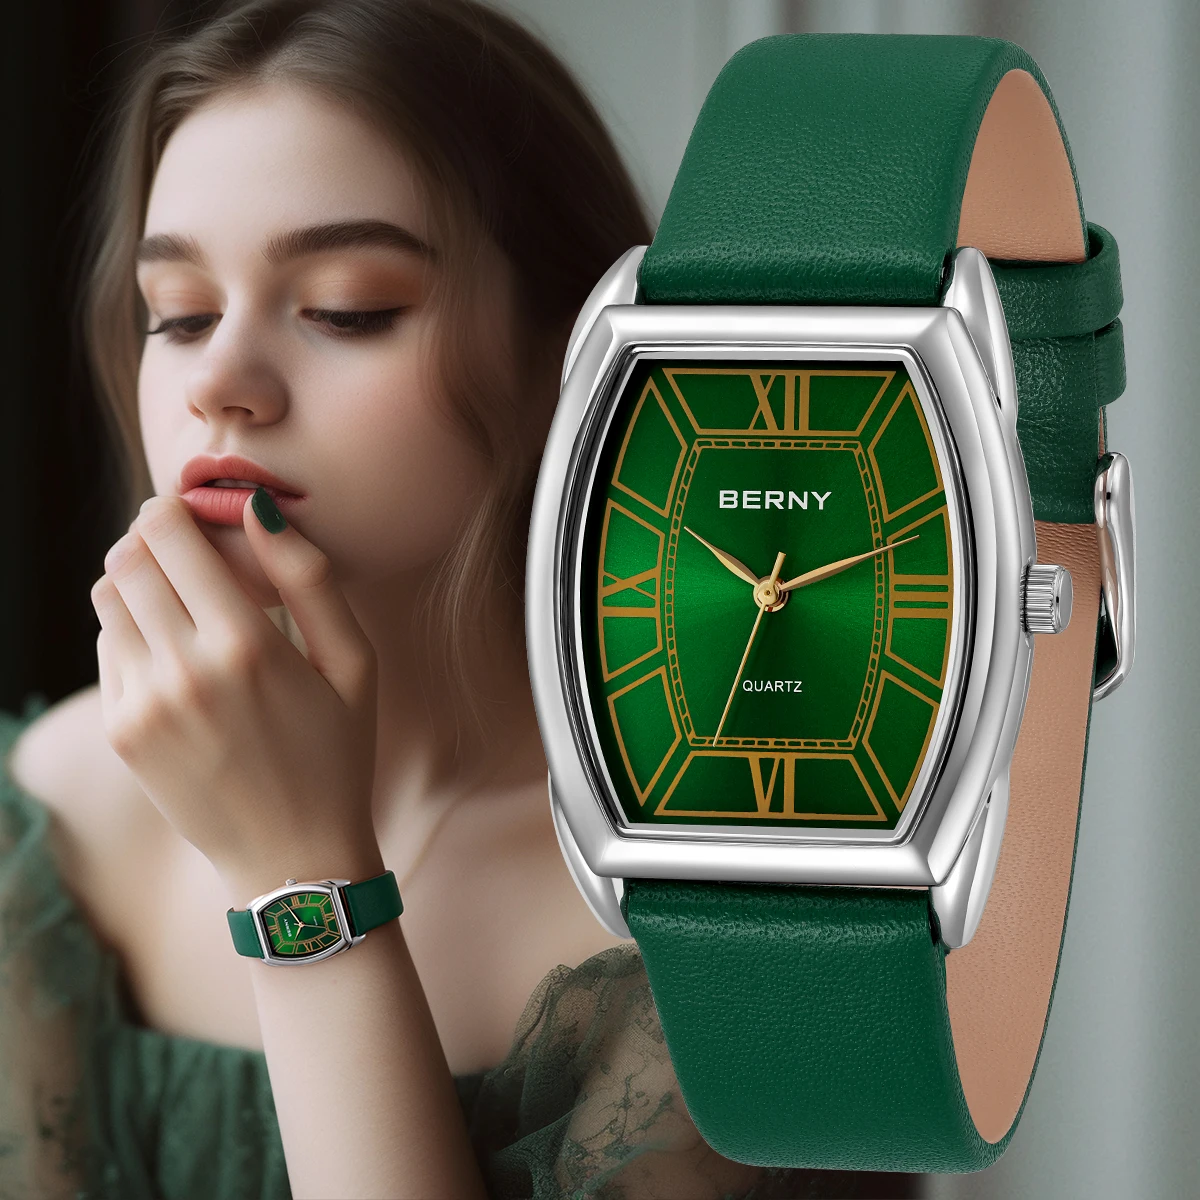 Berny Frauen Uhr Mode Leder armband elegante Damen Quarzuhren mehrfarbige wasserdichte Kleid Damen Armbanduhr